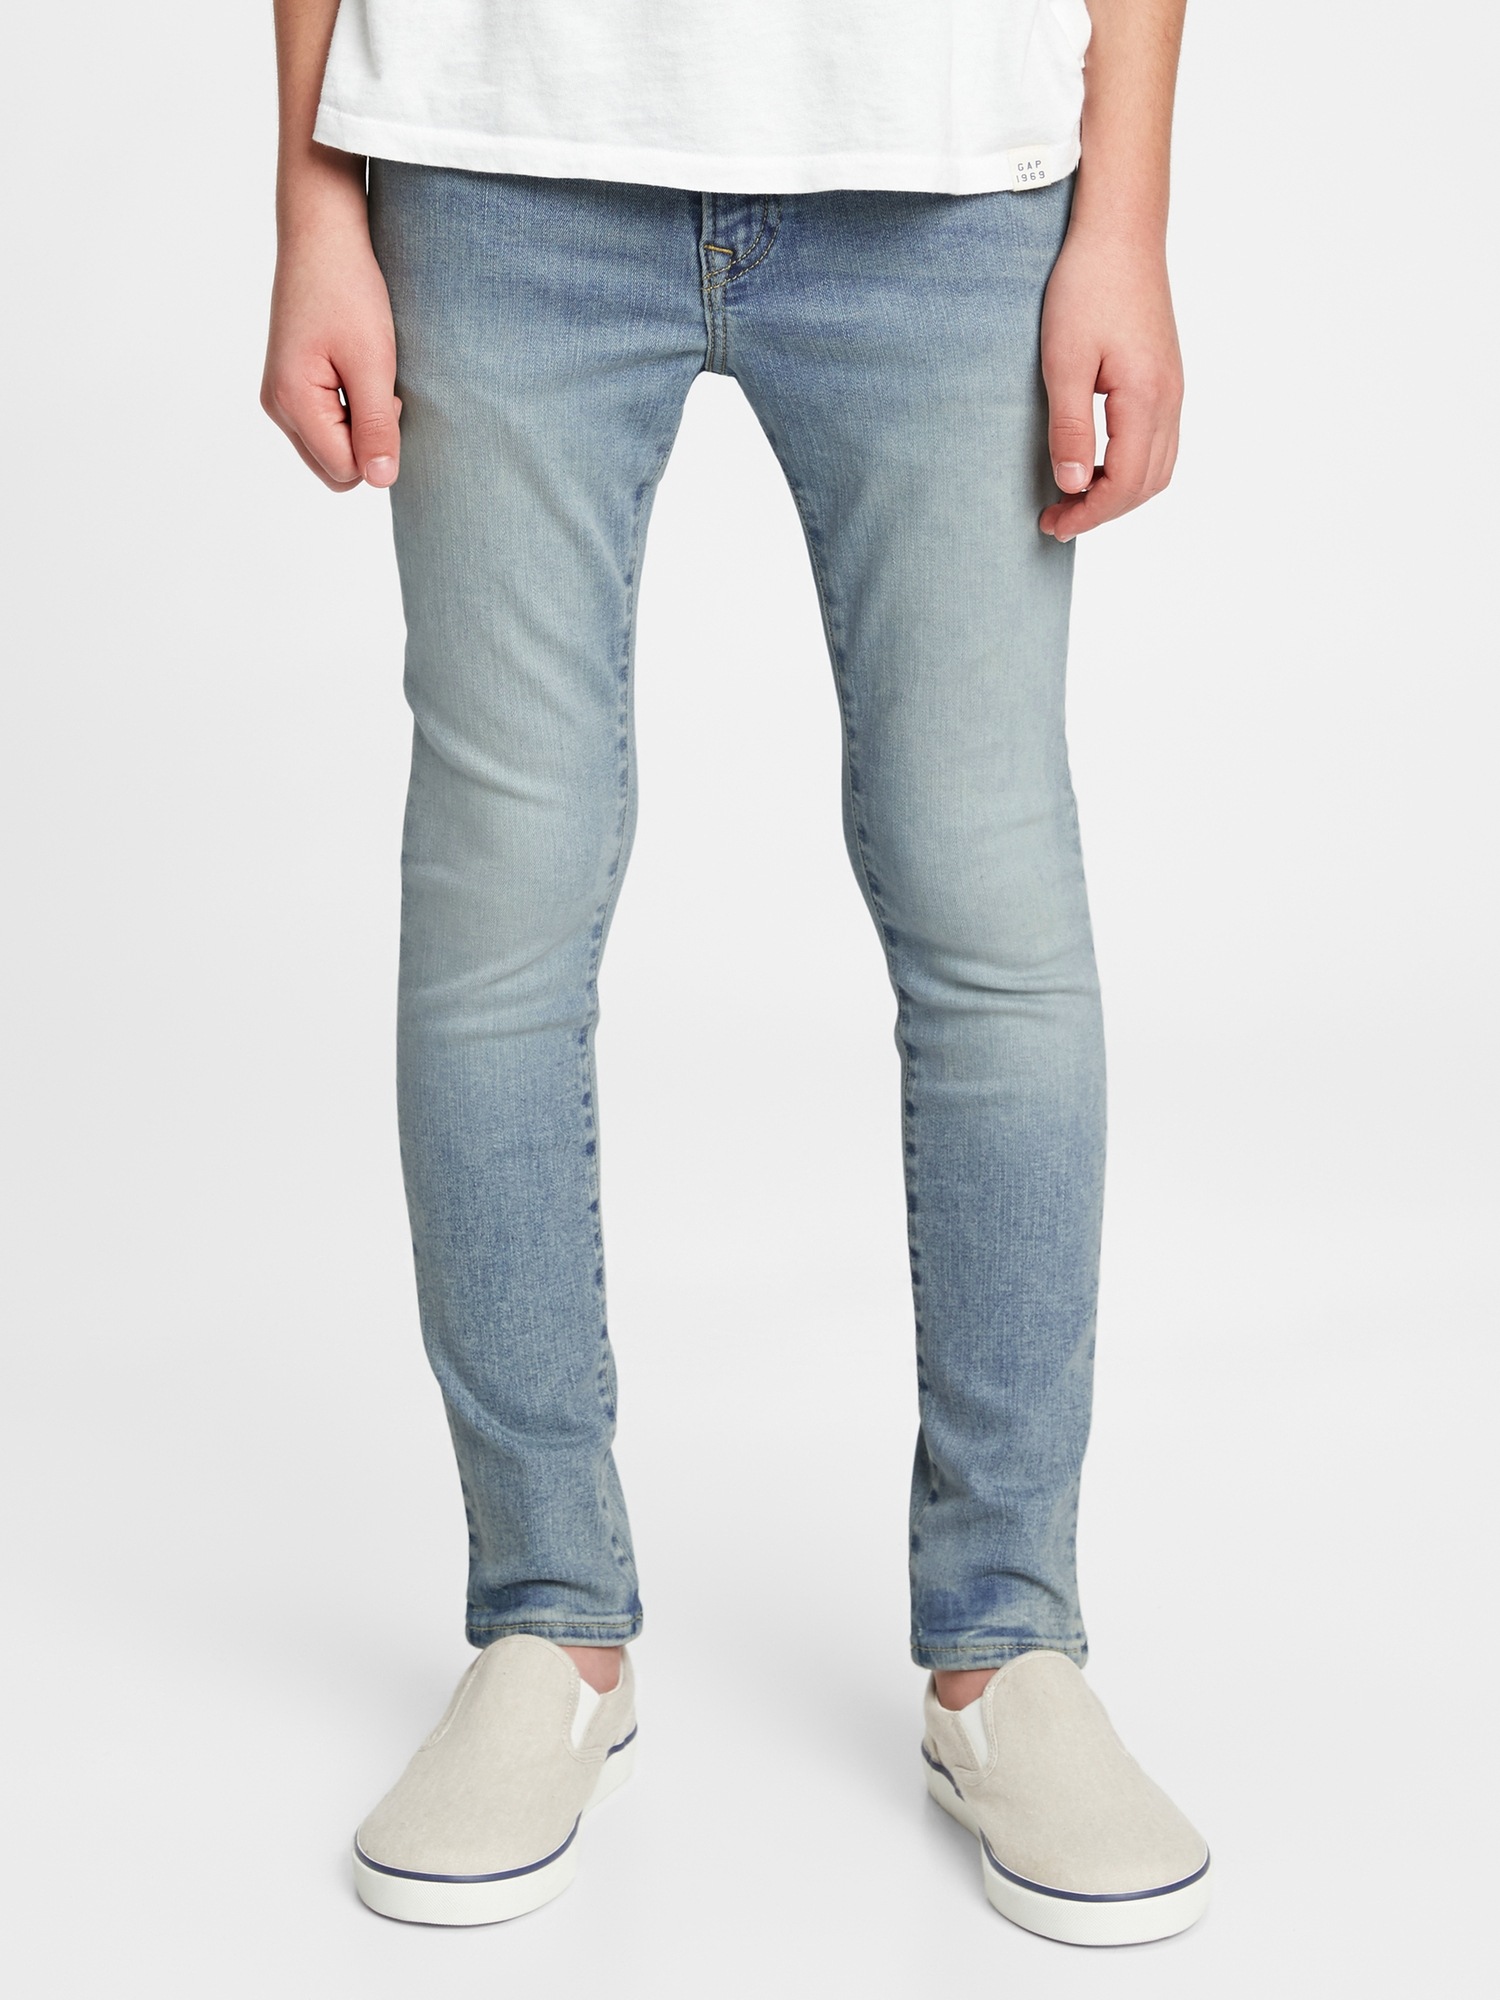 Мужские джинсы gap 100% Cotton